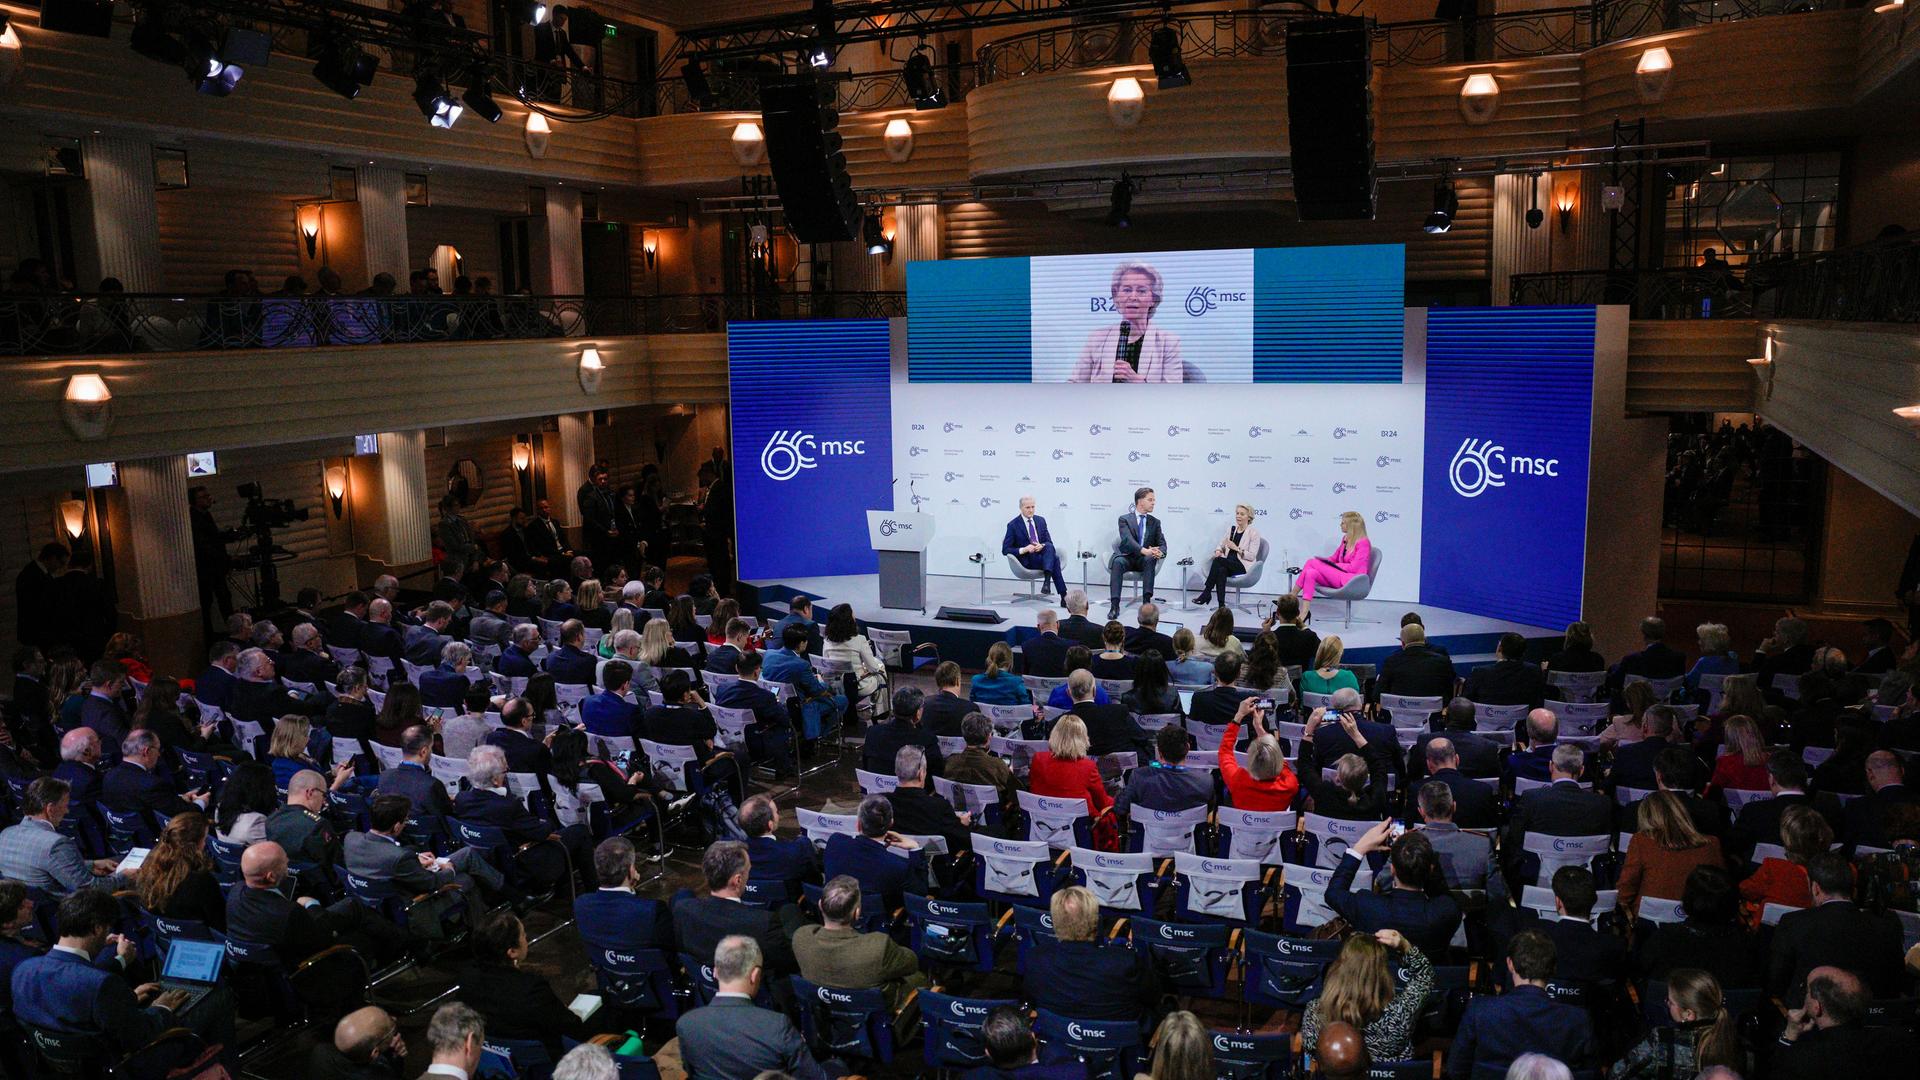 Das Bild zeigt Zuschauer von hinten in einem großen Saal der Münchner Sicherheitskonferenz. Vorn ist ein Podium zu erkennen, dort spricht EU-Kommissionspräsidentin von der Leyen in ein Mikrofon.